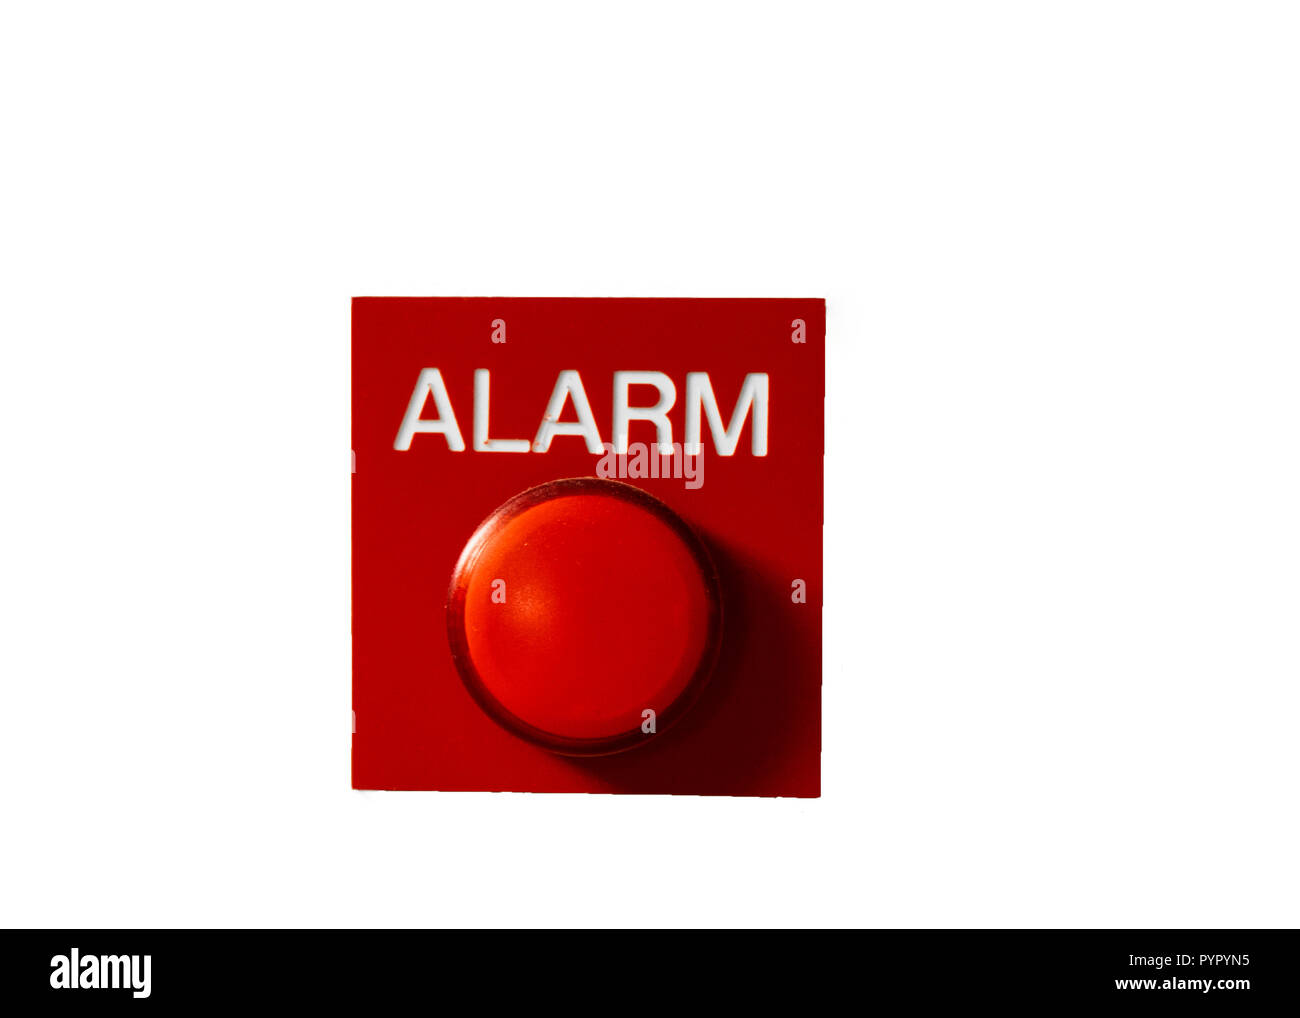 Rote Taste Alarm signal isoliert auf Weiss. Konzept der Alarm - Feuer,  Konkurs, Raub etc Stockfotografie - Alamy